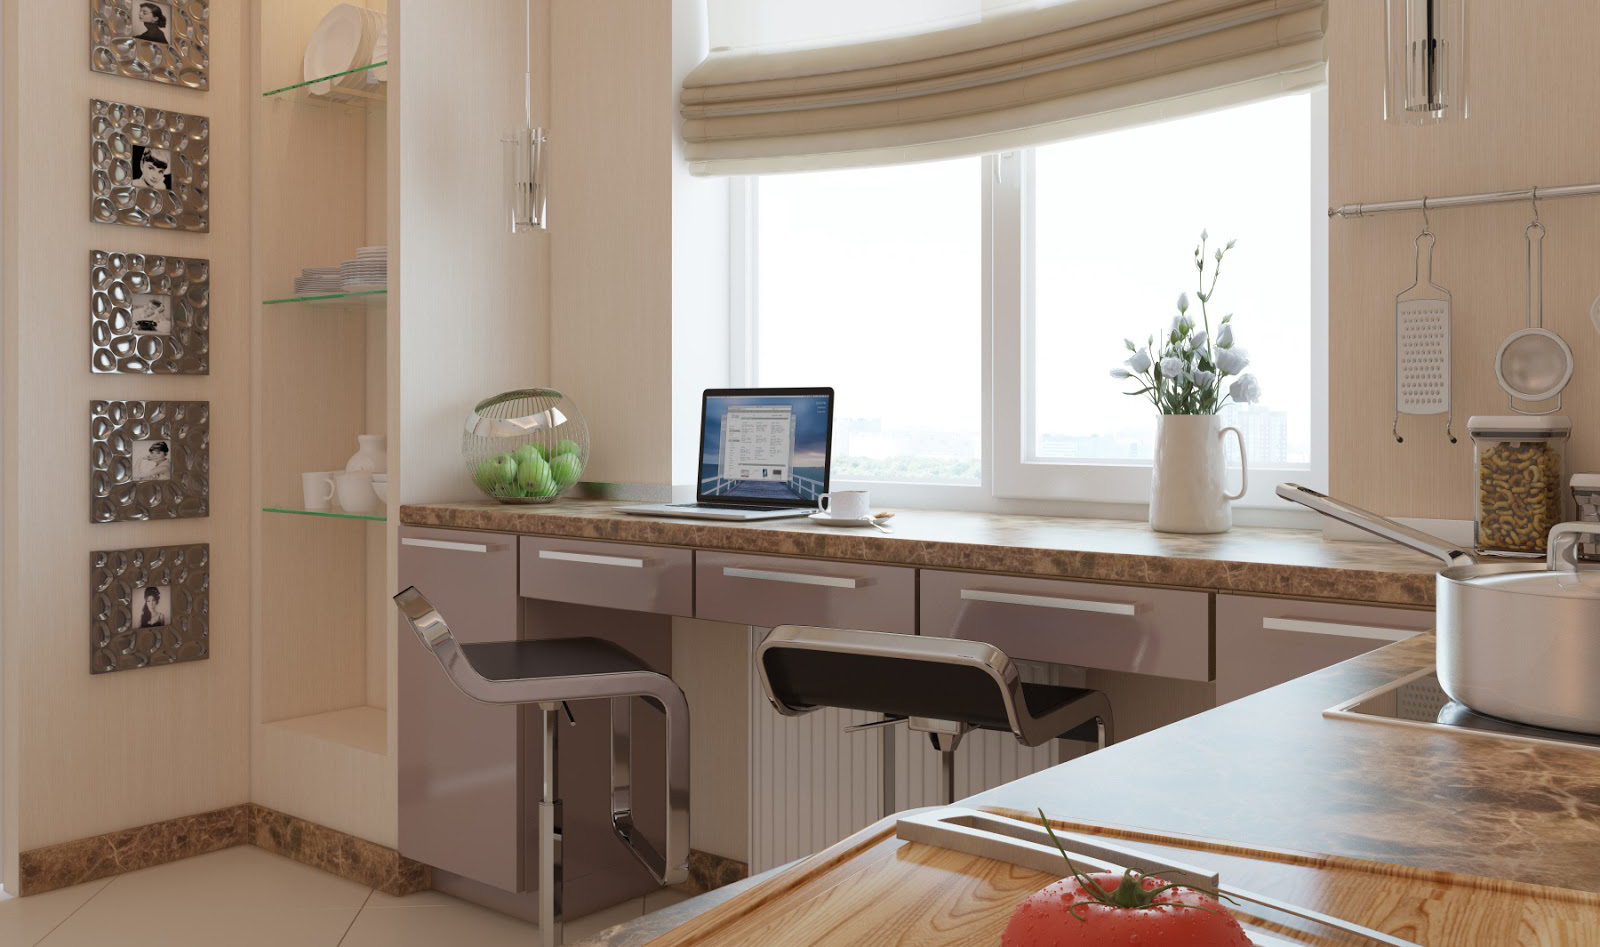 Стол-подоконник на кухне: выбор формы, материала и дизайна